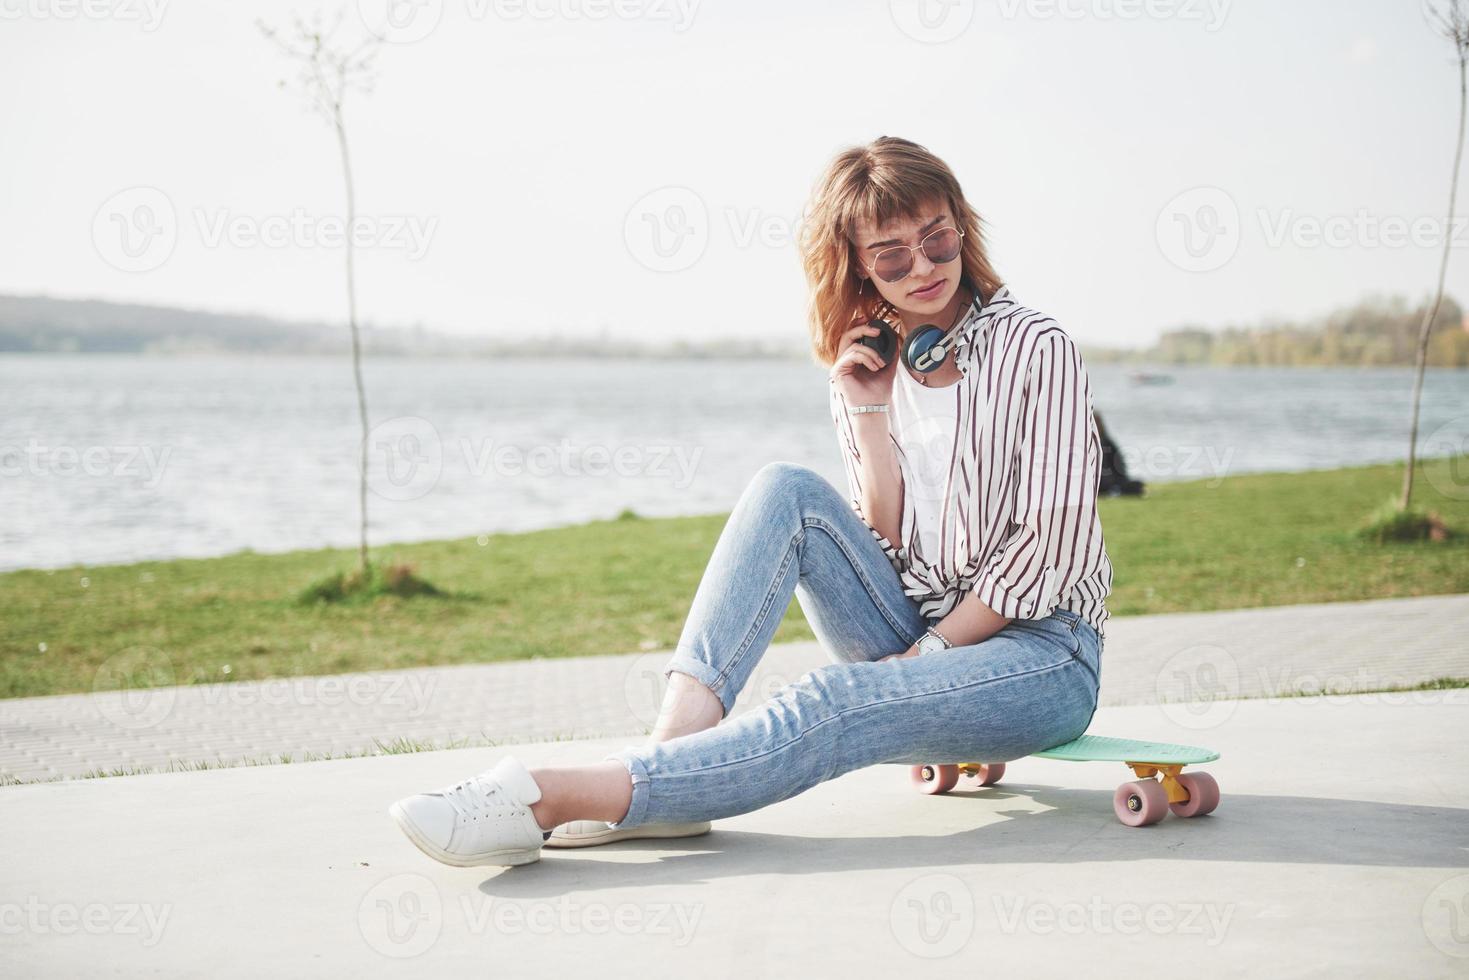 Una hermosa joven se divierte en el parque y monta una patineta. foto